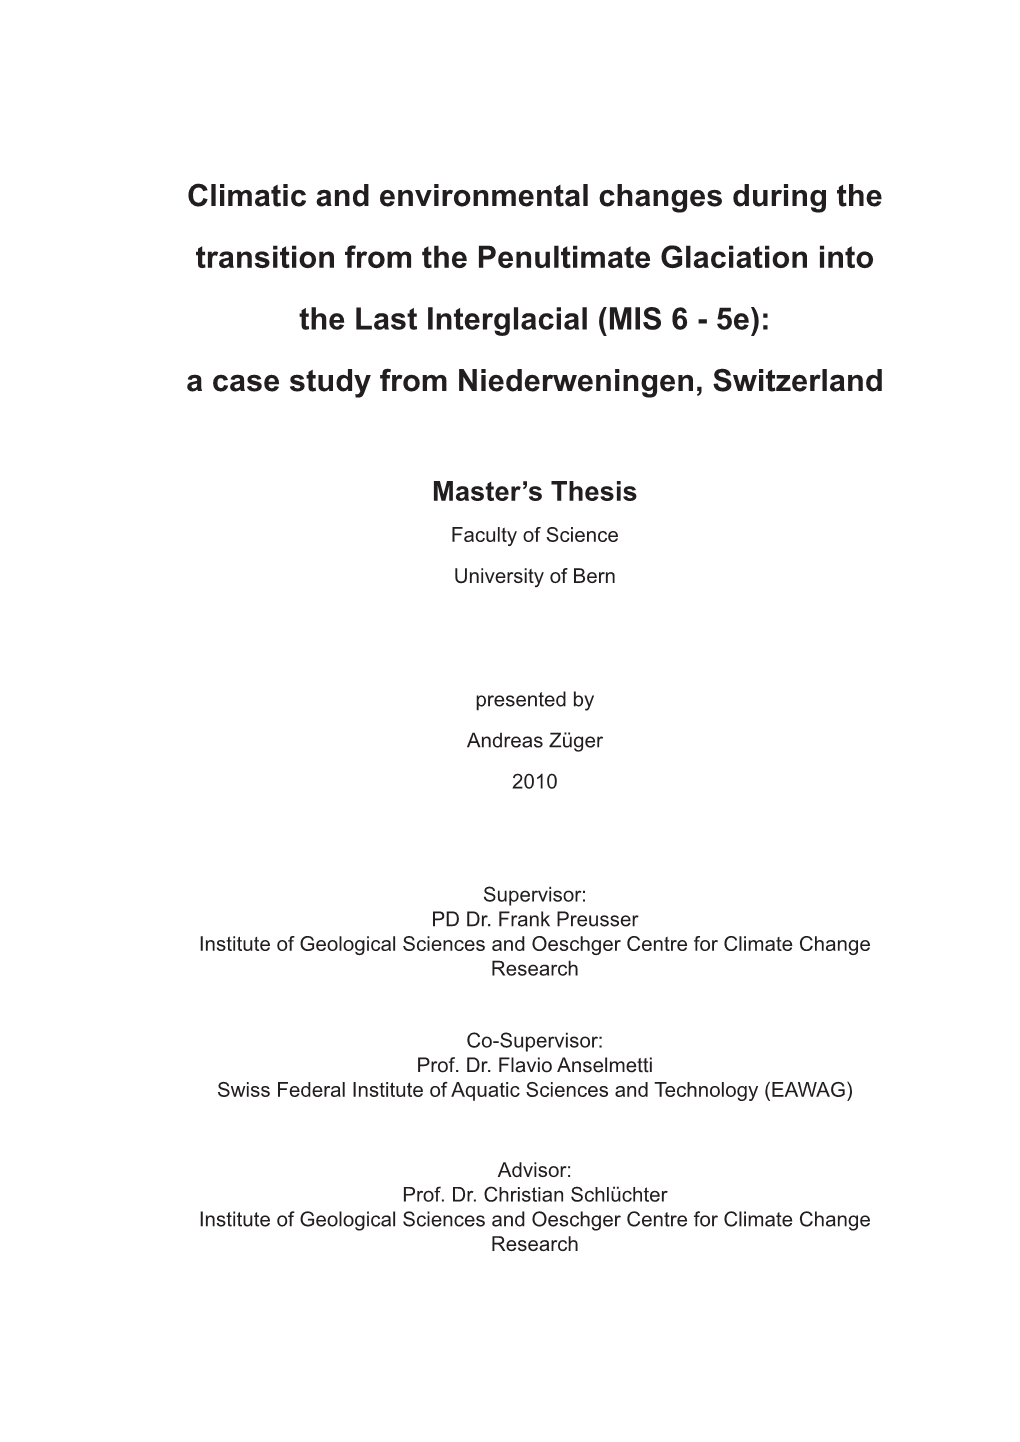 MIS 6 - 5E): a Case Study from Niederweningen, Switzerland